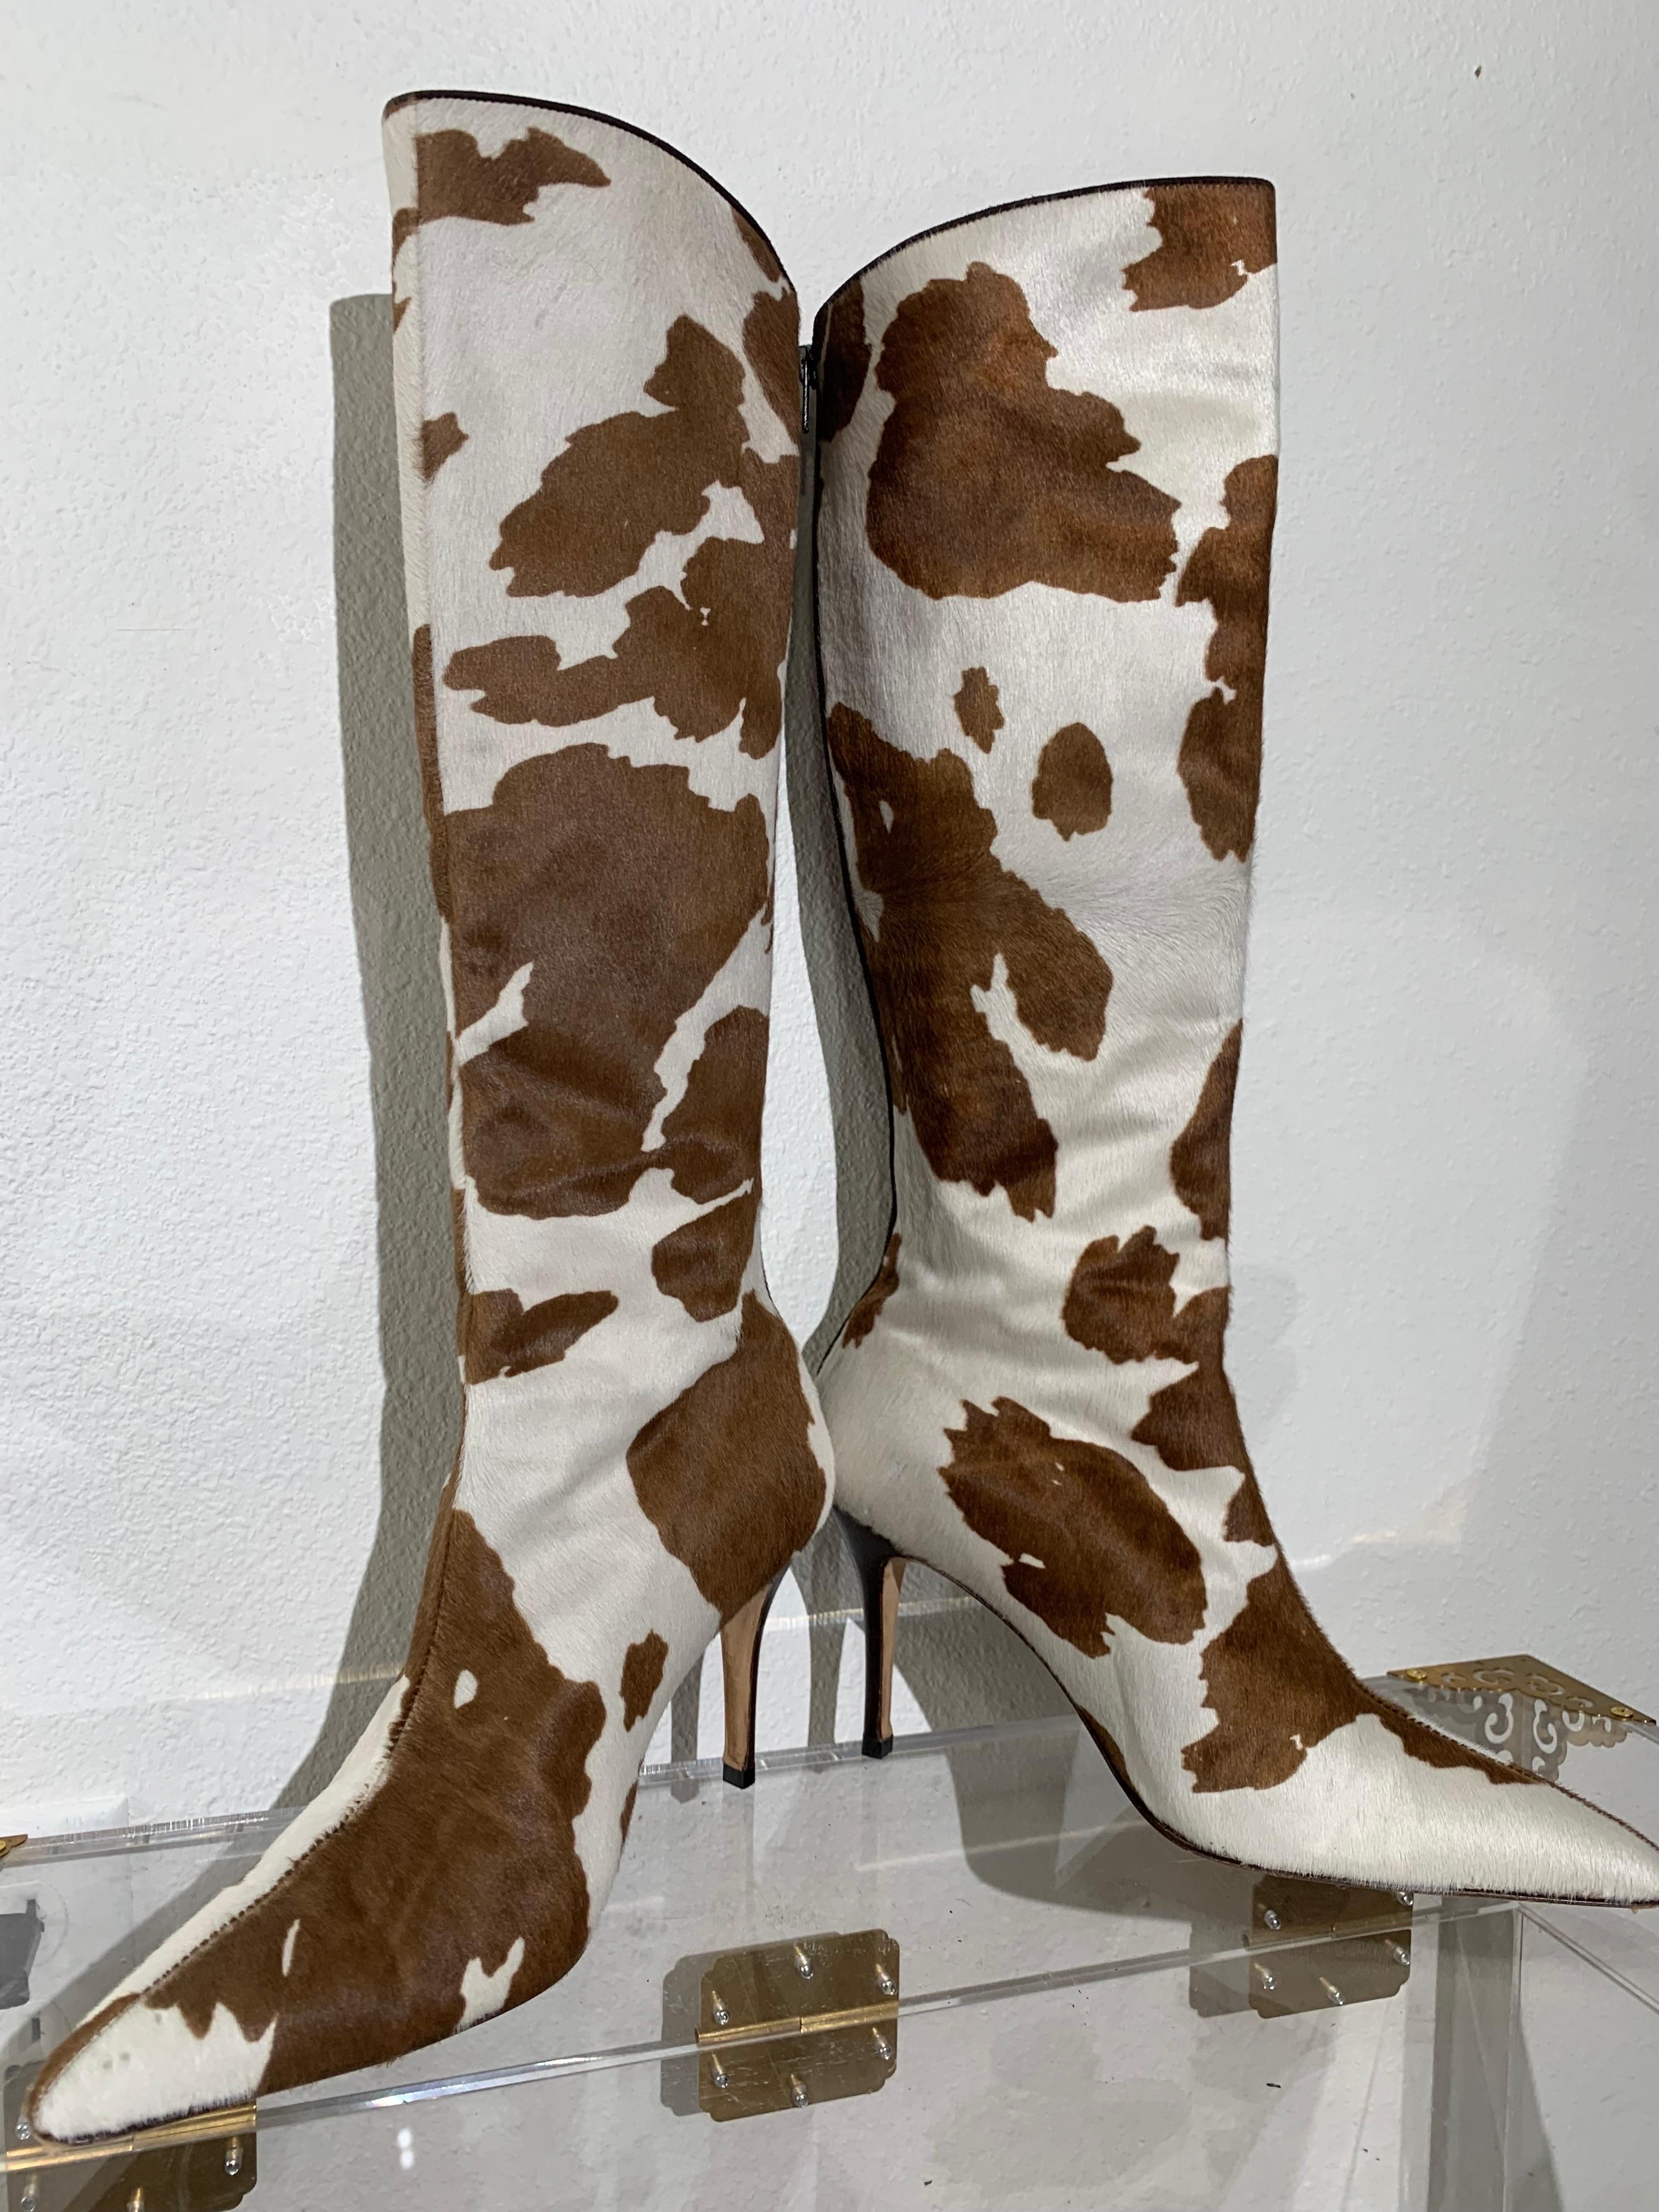 Manolo Blahnik Stiefel mit kniehohem Stilettoabsatz aus braunem und weißem Rindsleder:  Geflecktes Kalbshaar, 19